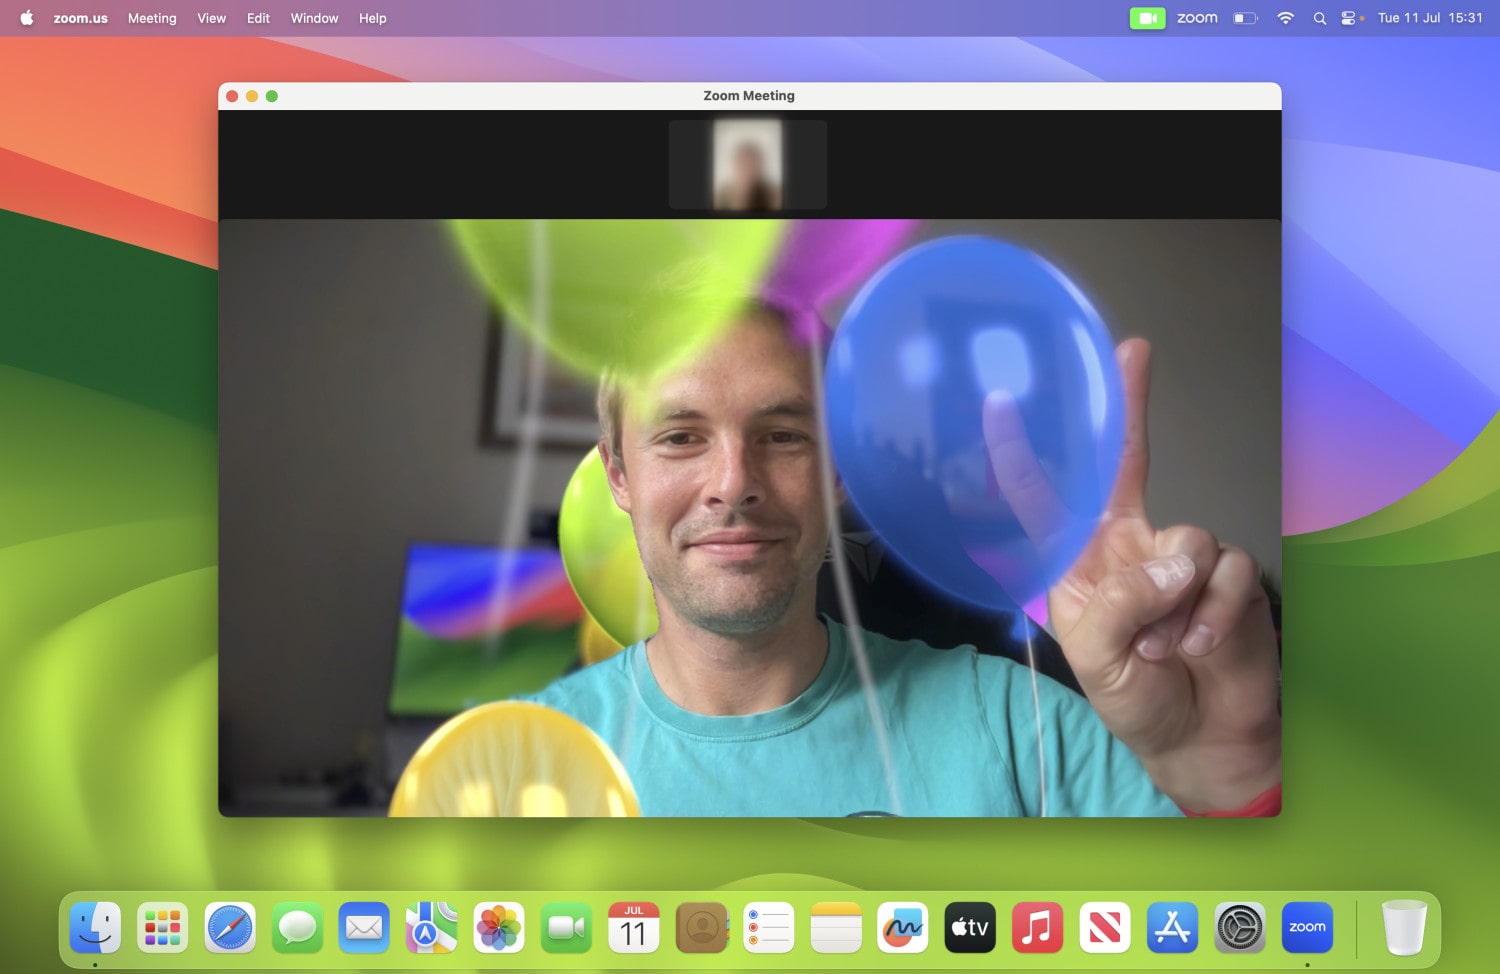 Reações de vídeo no macOS Sonoma, com o efeito de balões em uso.